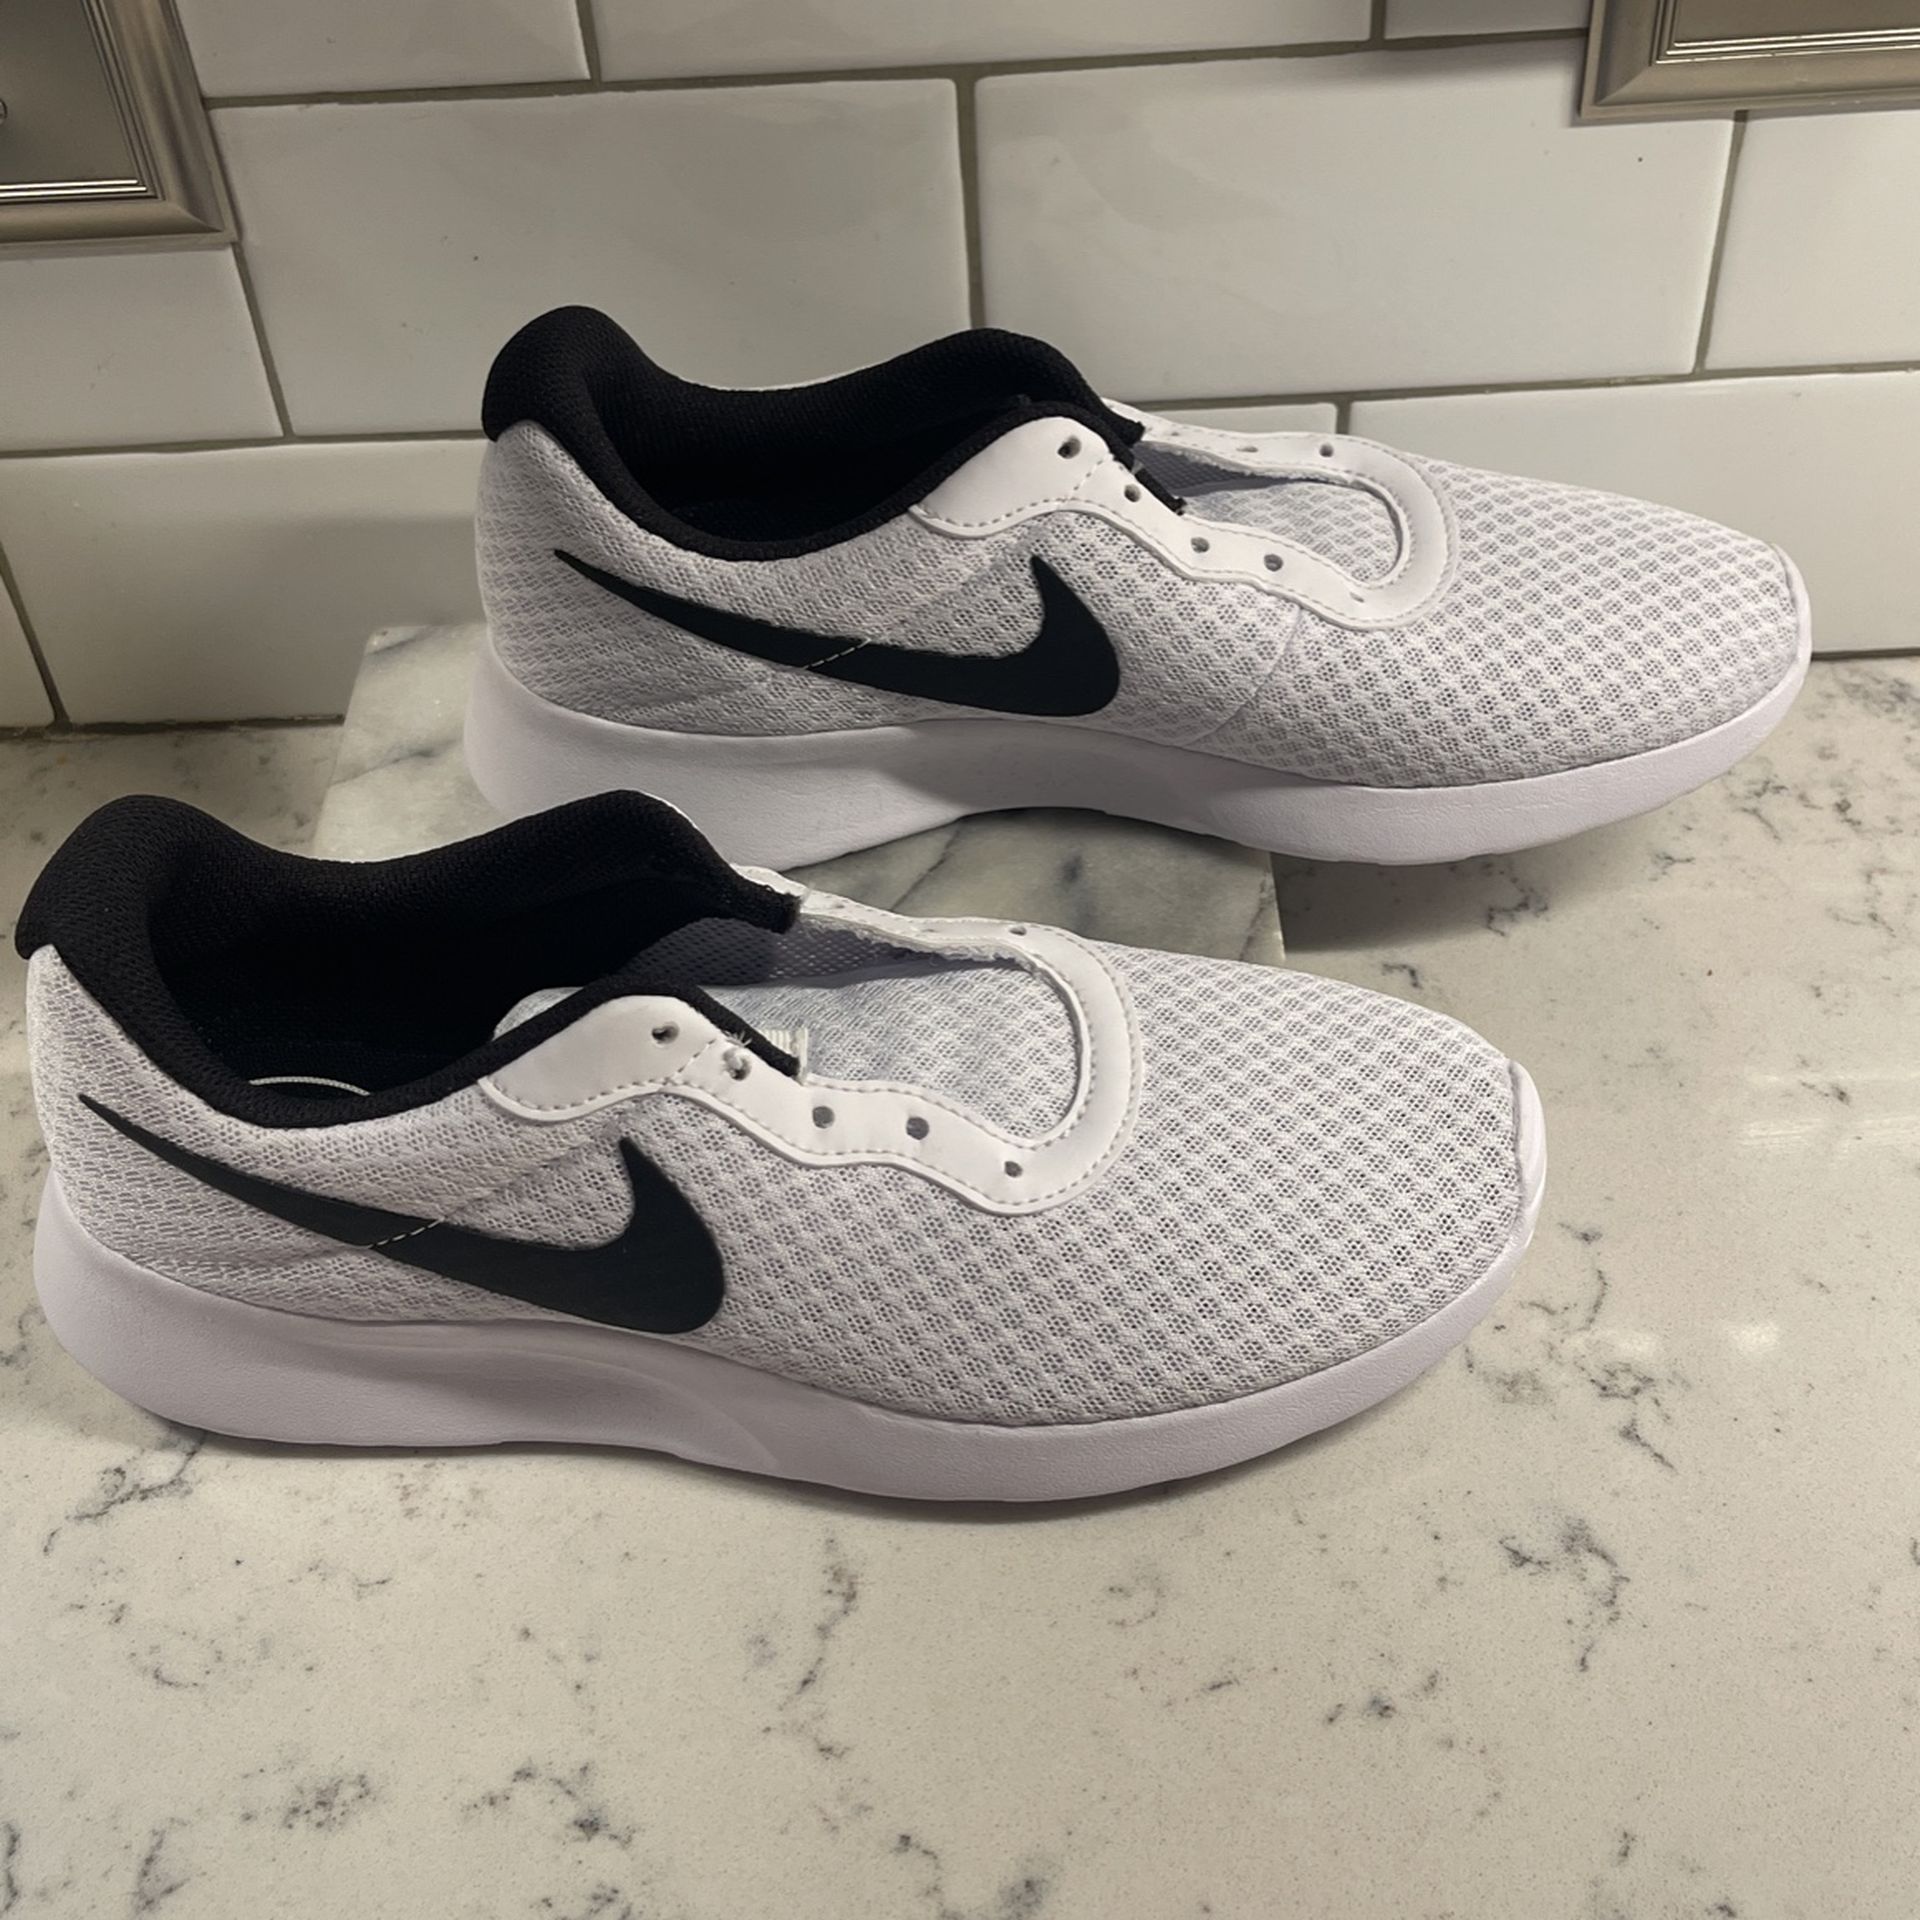 Ladies Brand New White Nike Tennis Size 8. 